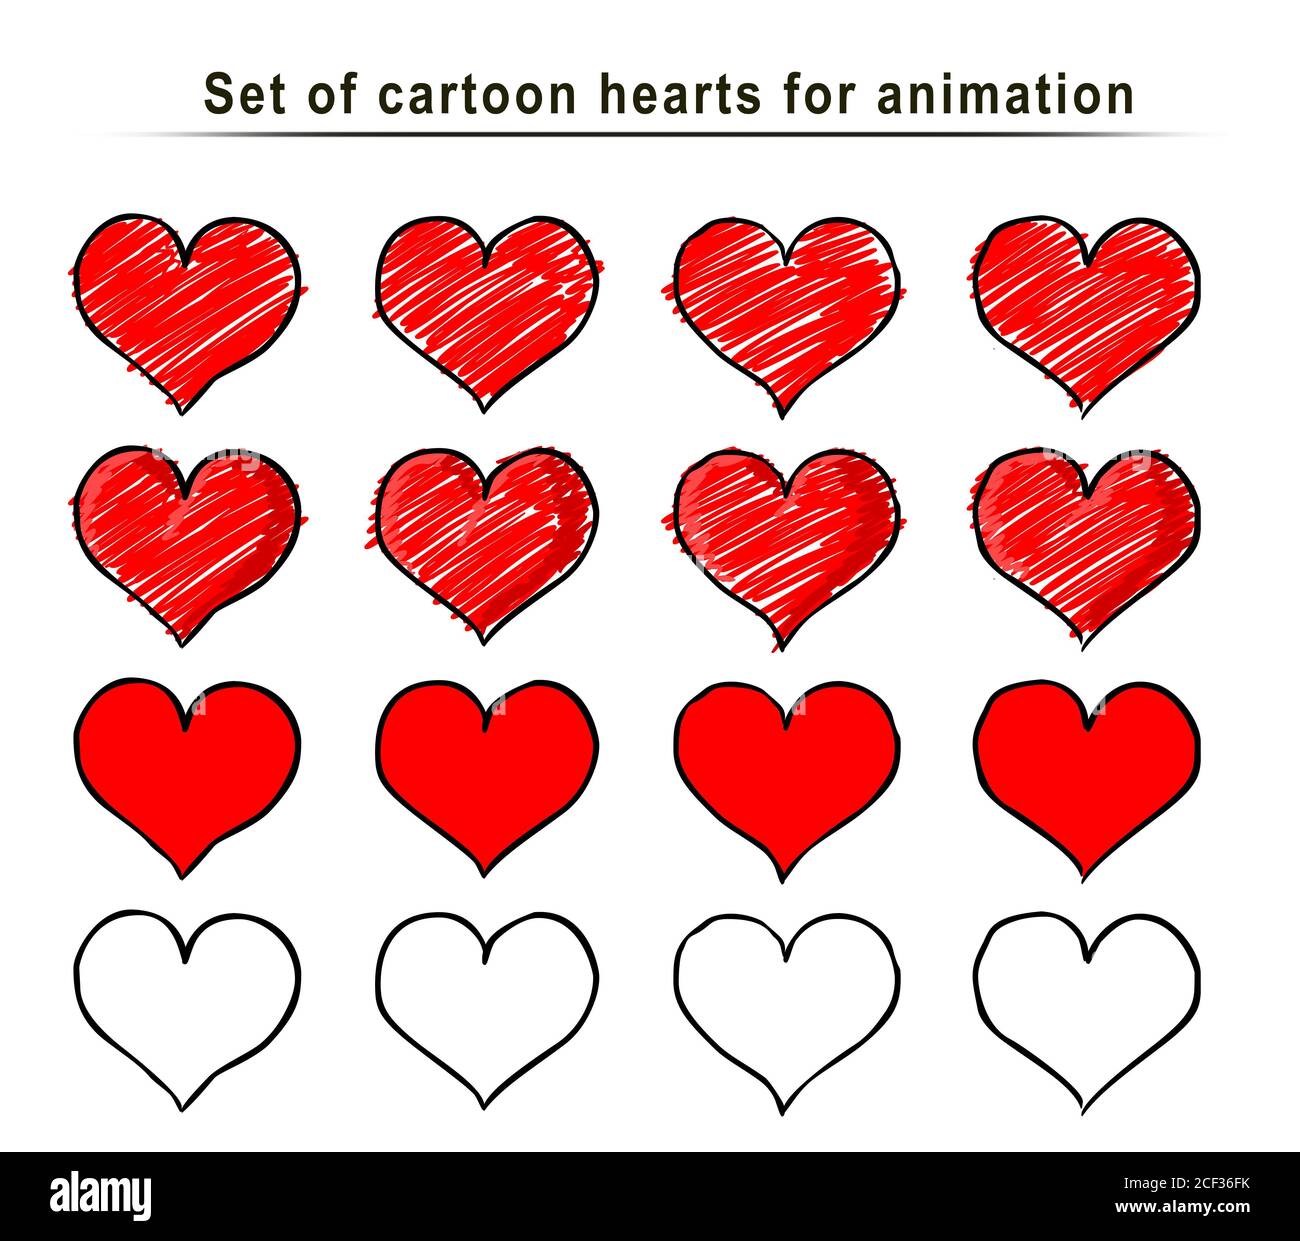 Satz von Cartoon Herz Animation Rahmen, handgezeichnete Skizze, Doodle  Vektor. Rote Symbole gezeichnet mit Pinsel, Stift, Tinte, isoliert auf  weißem Hintergrund. Cooler Trend Stockfotografie - Alamy